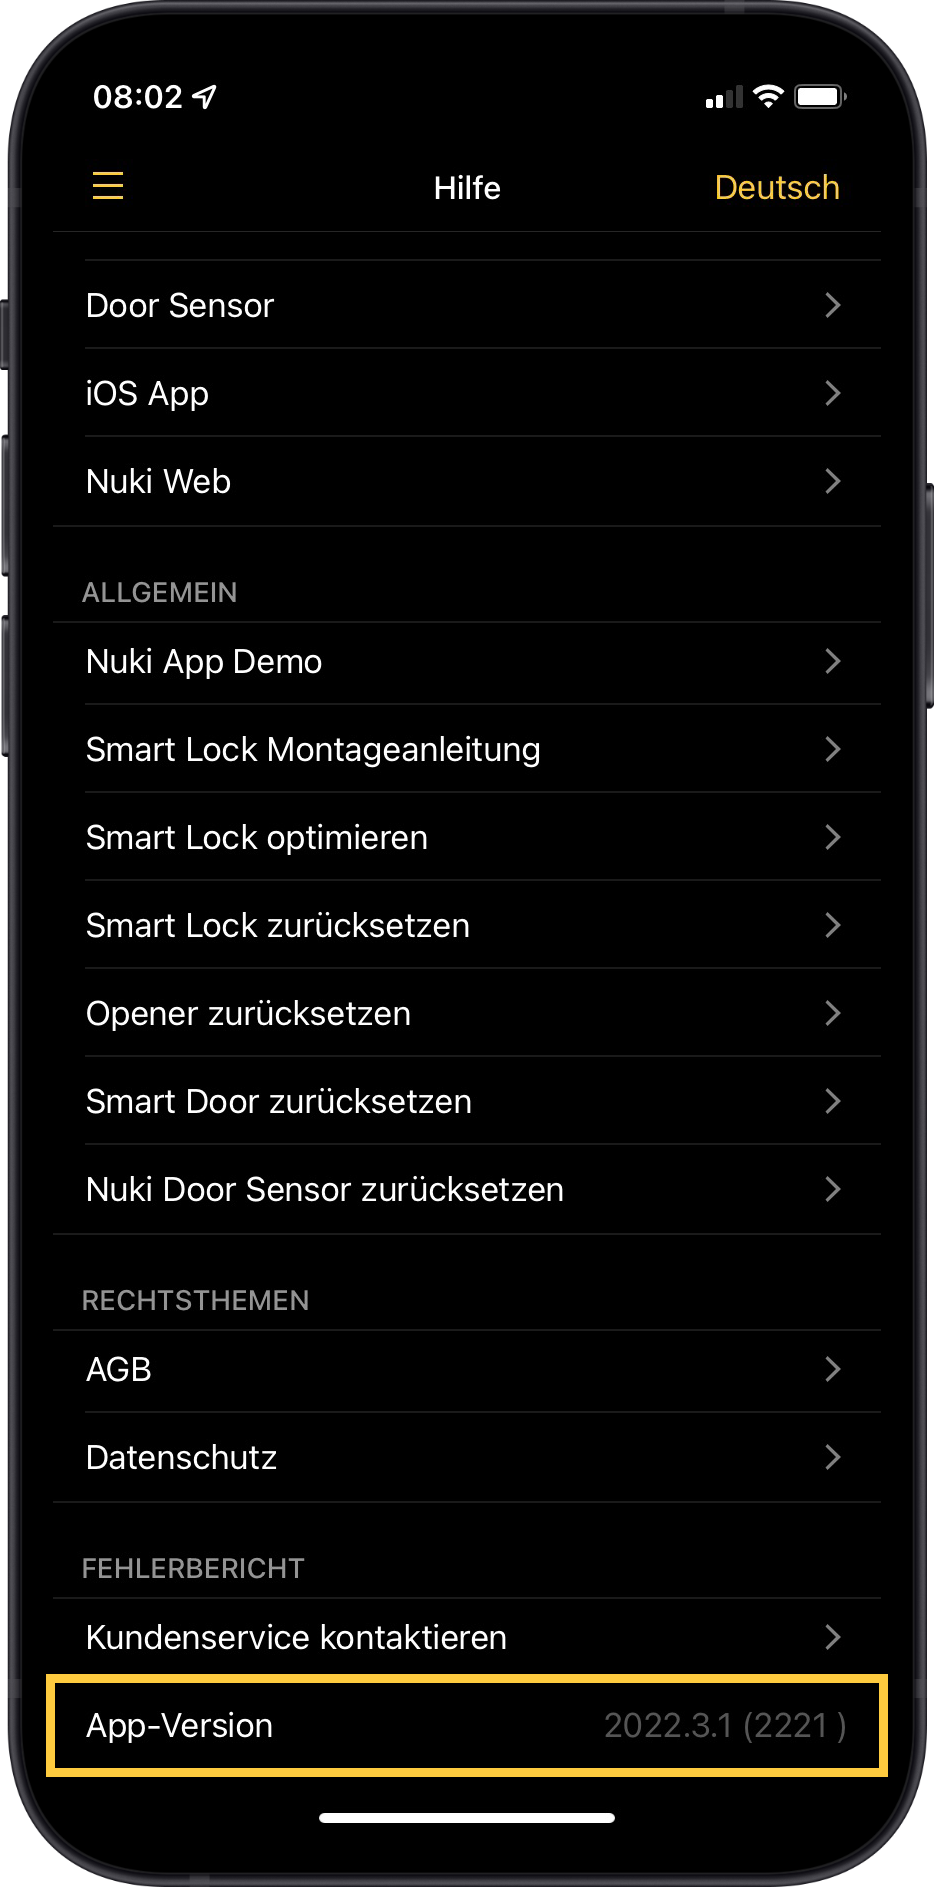 Für mehr Transparenz und bessere Übersicht: neue Versionsnummerierung der Nuki App Releases